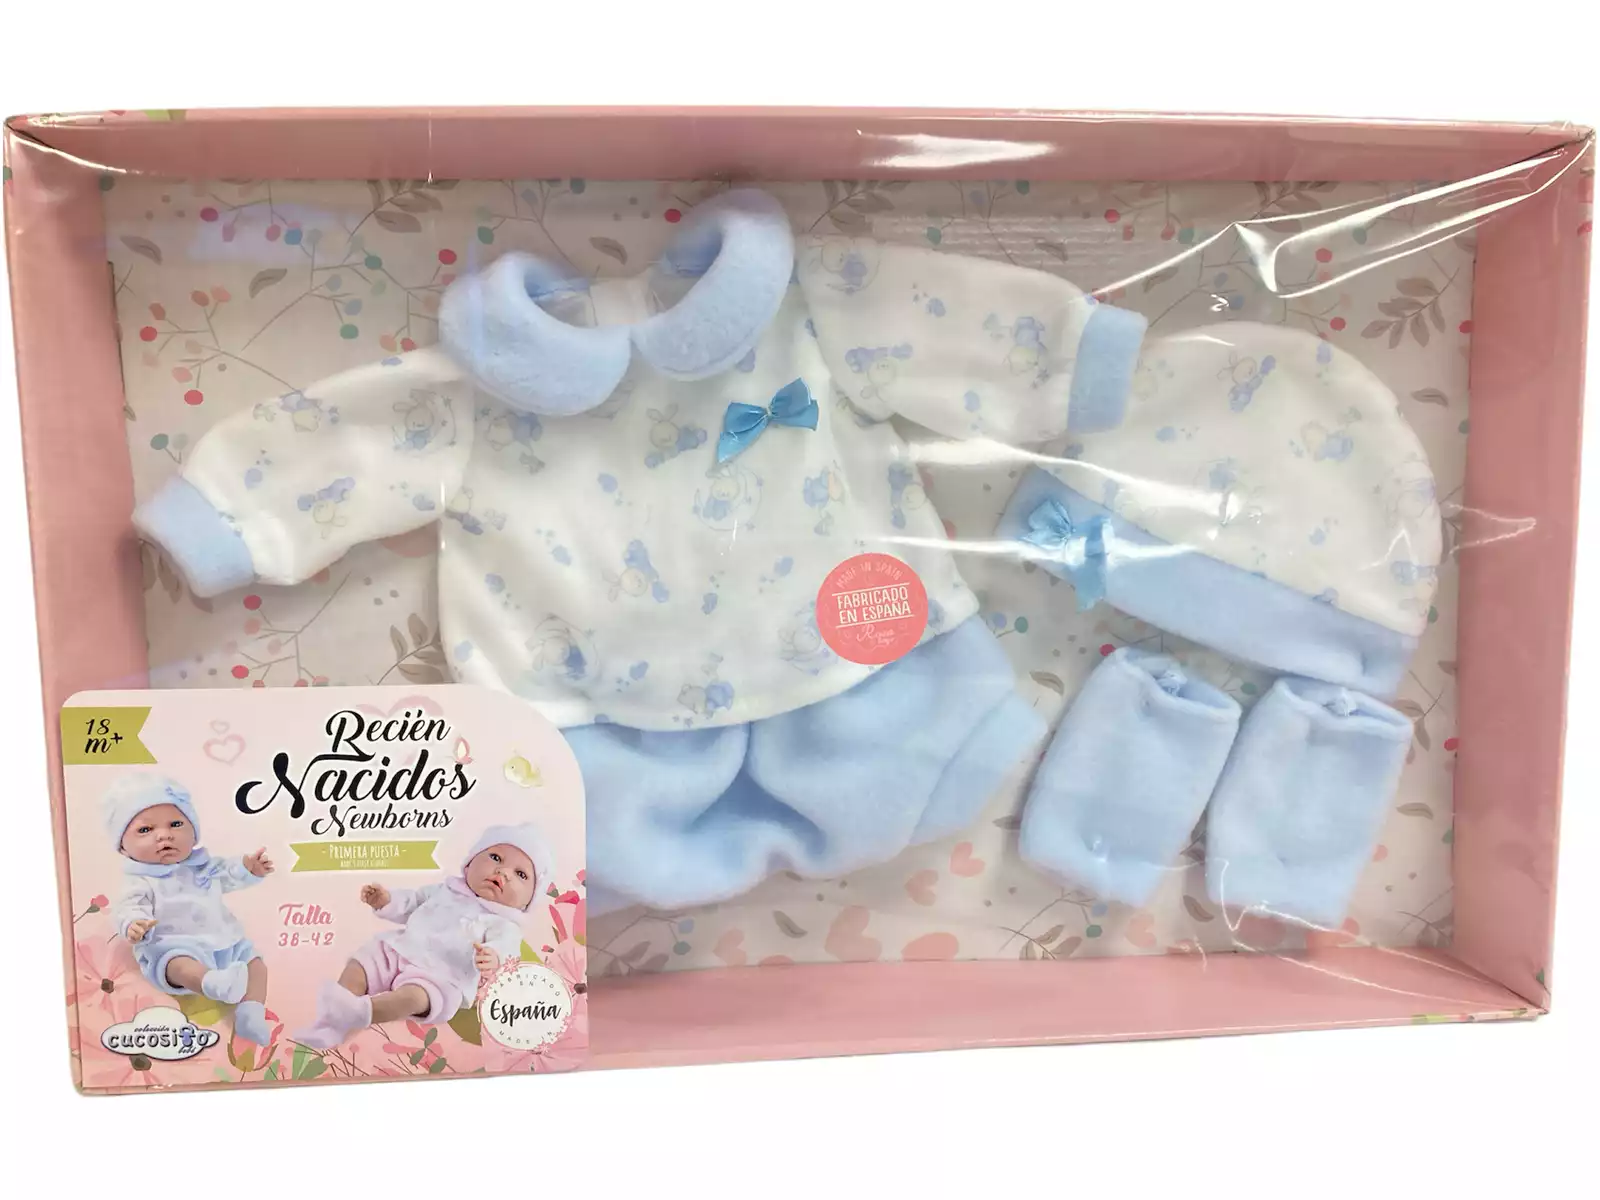 Acheter Bébé nouveau-né 40 cm. avec gants et écharpe rose - Juguetilandia